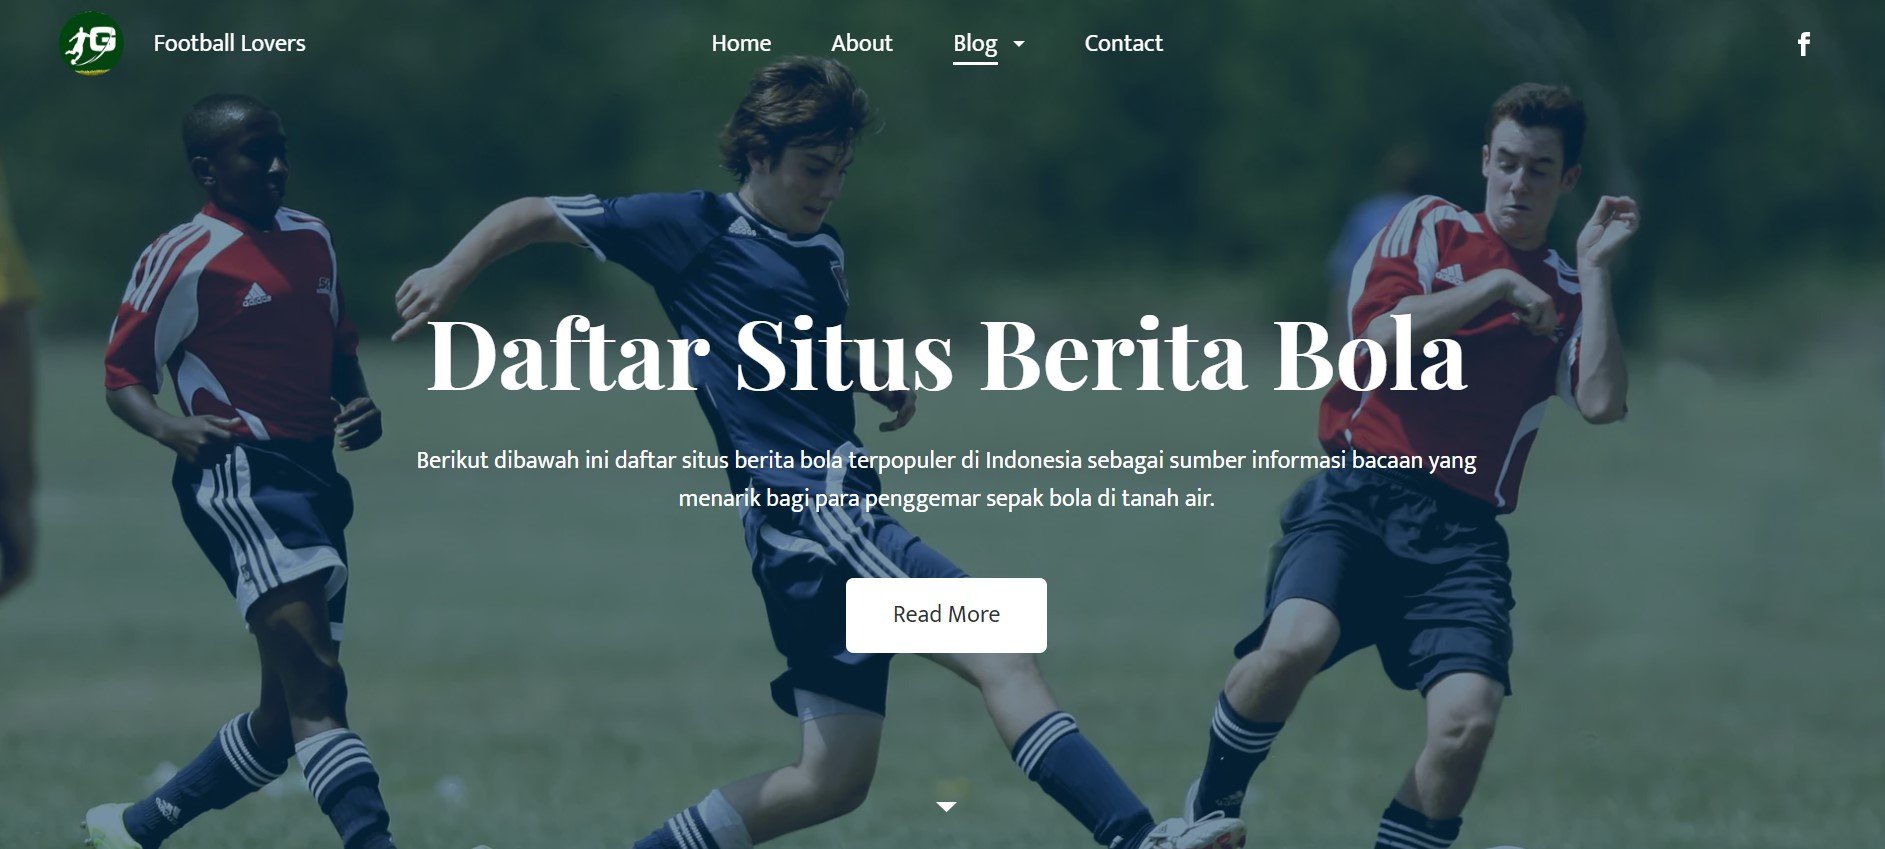 Daftar Situs Berita Bola Indonesia Terpopuler